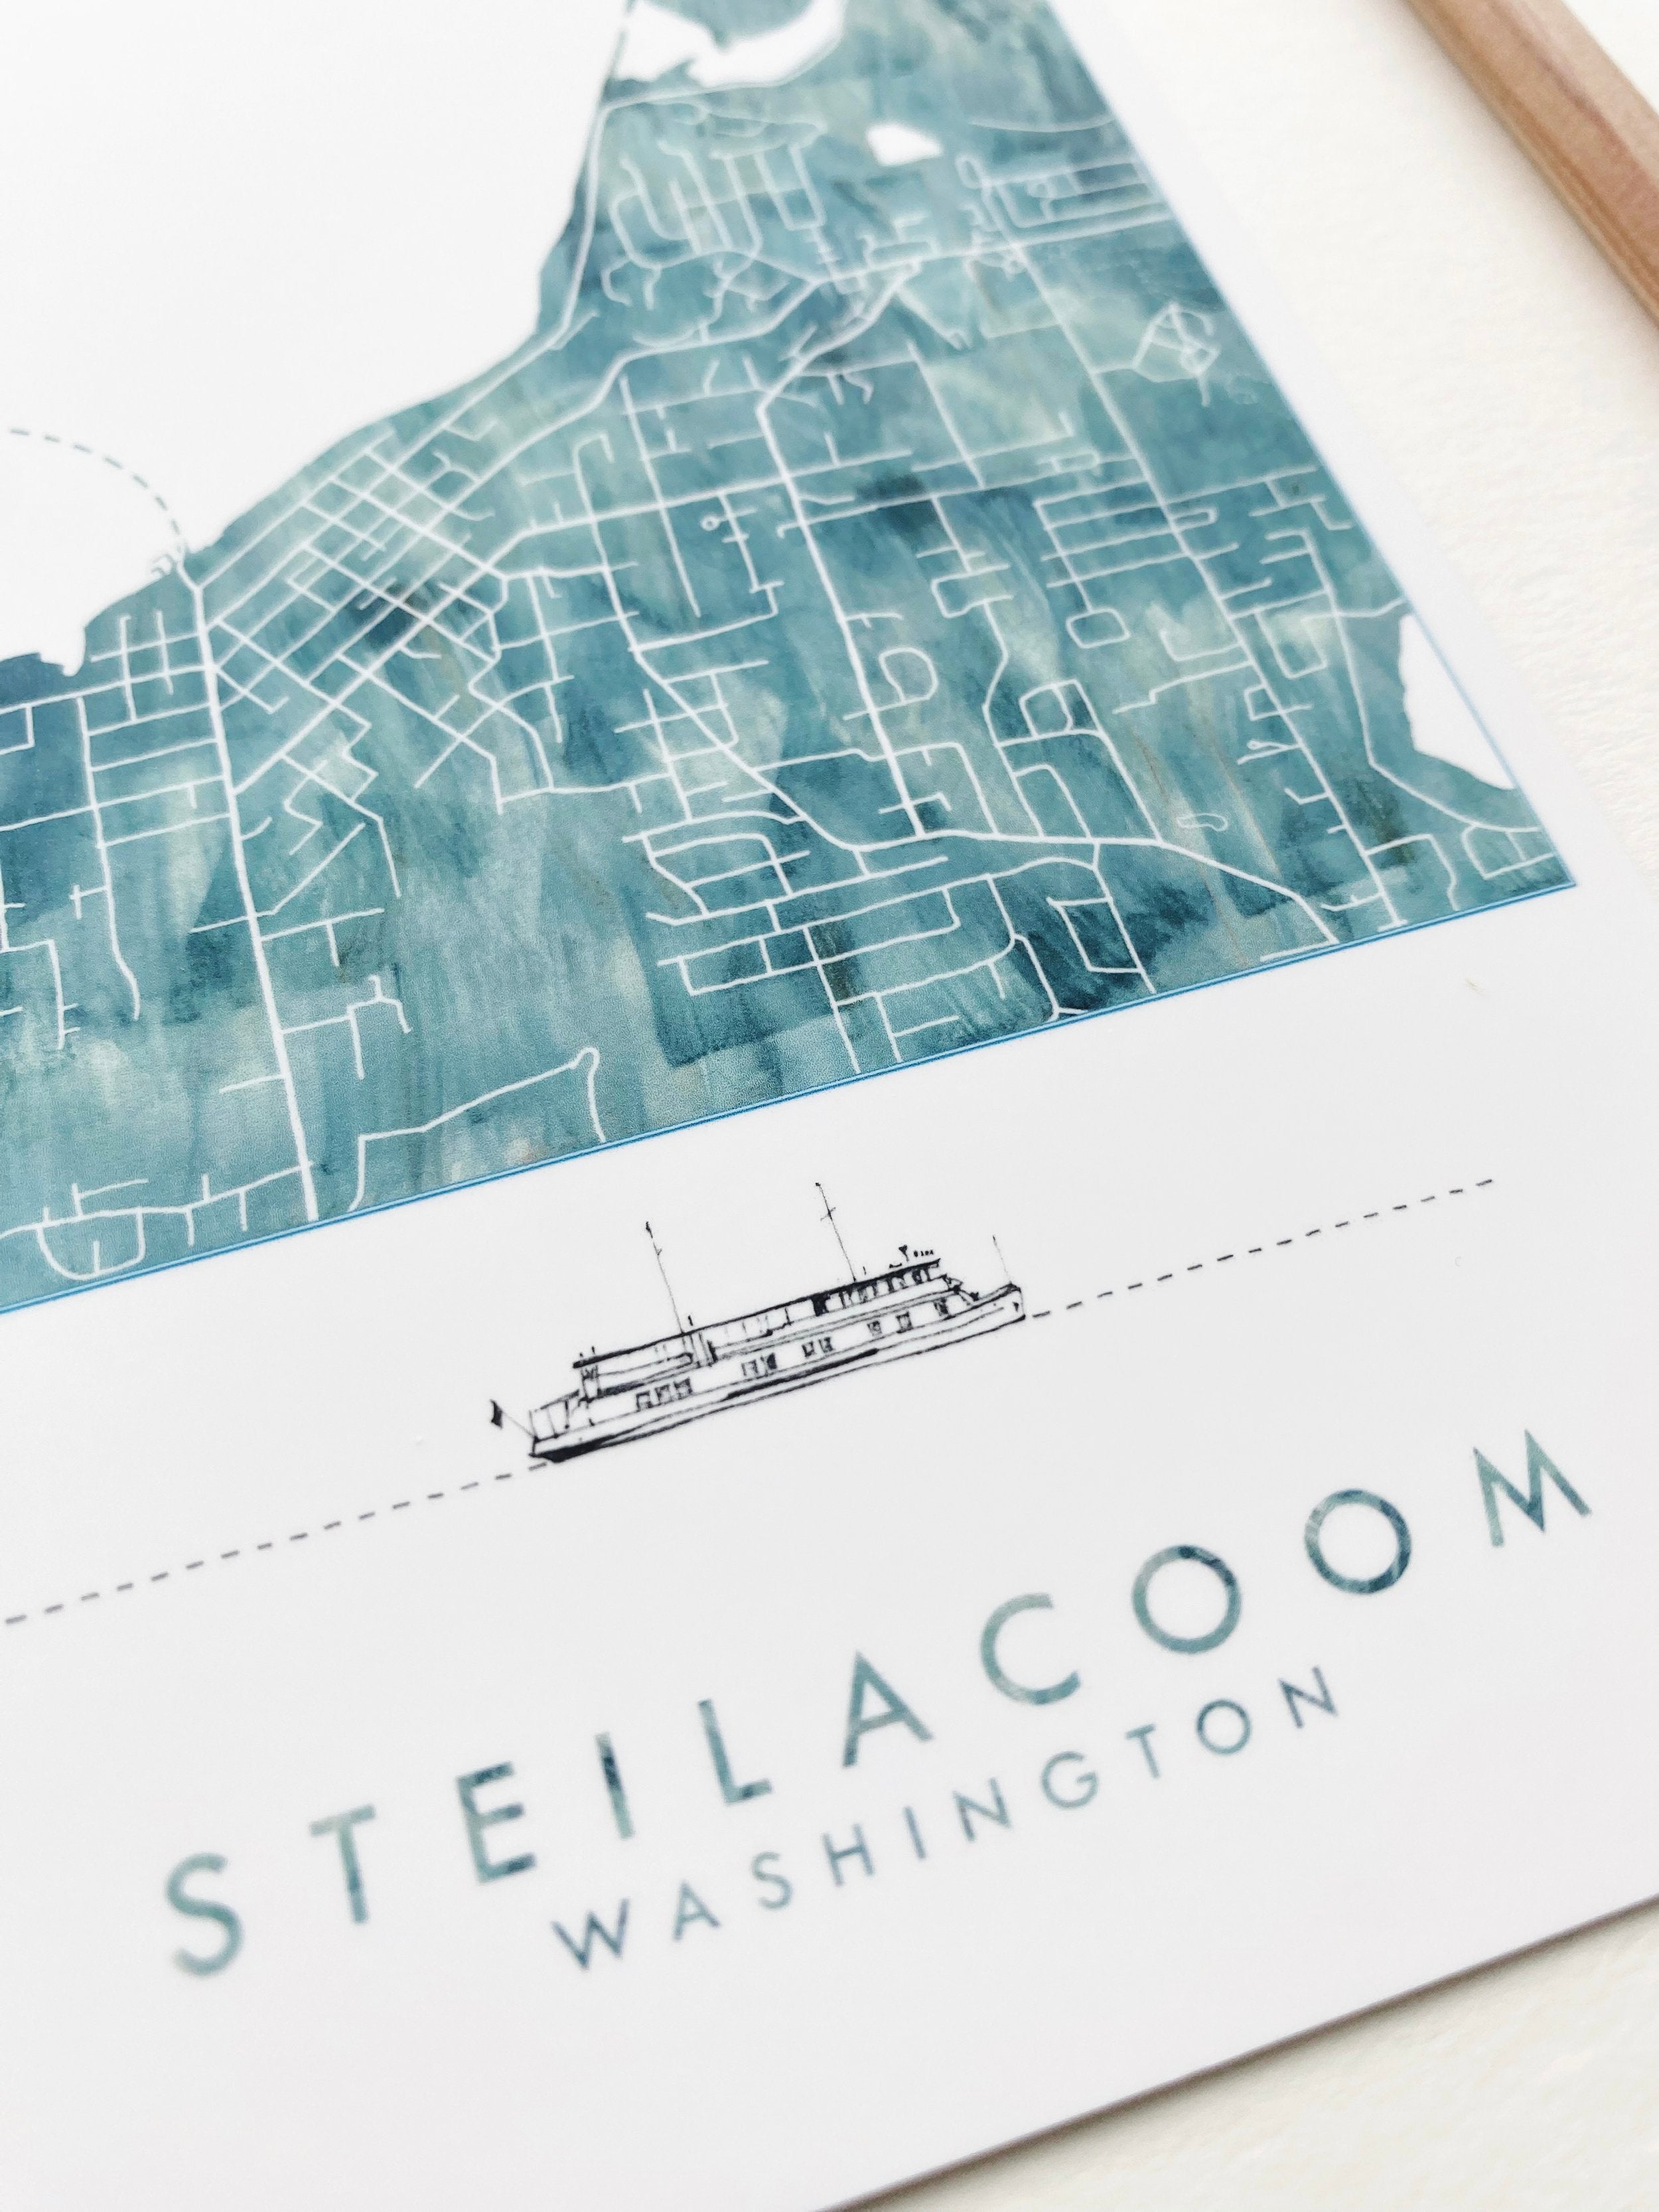 STEILACOOM Washington Ferry Map Postcard